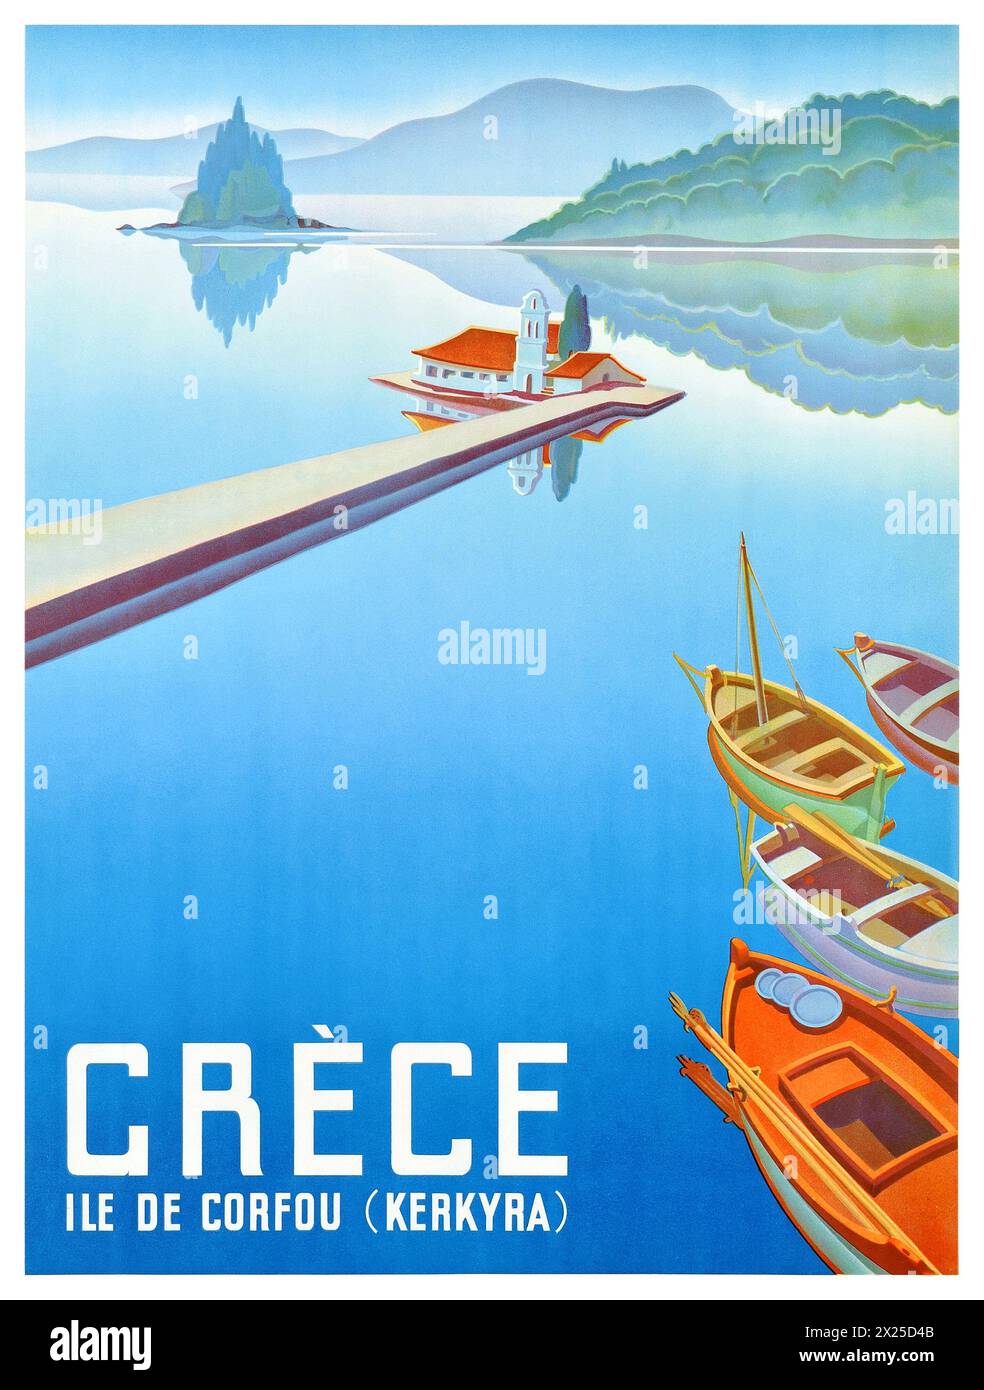 Grèce, île de Corfou. Artiste unknonw. Affiche publiée en 1949 en Grèce. Banque D'Images